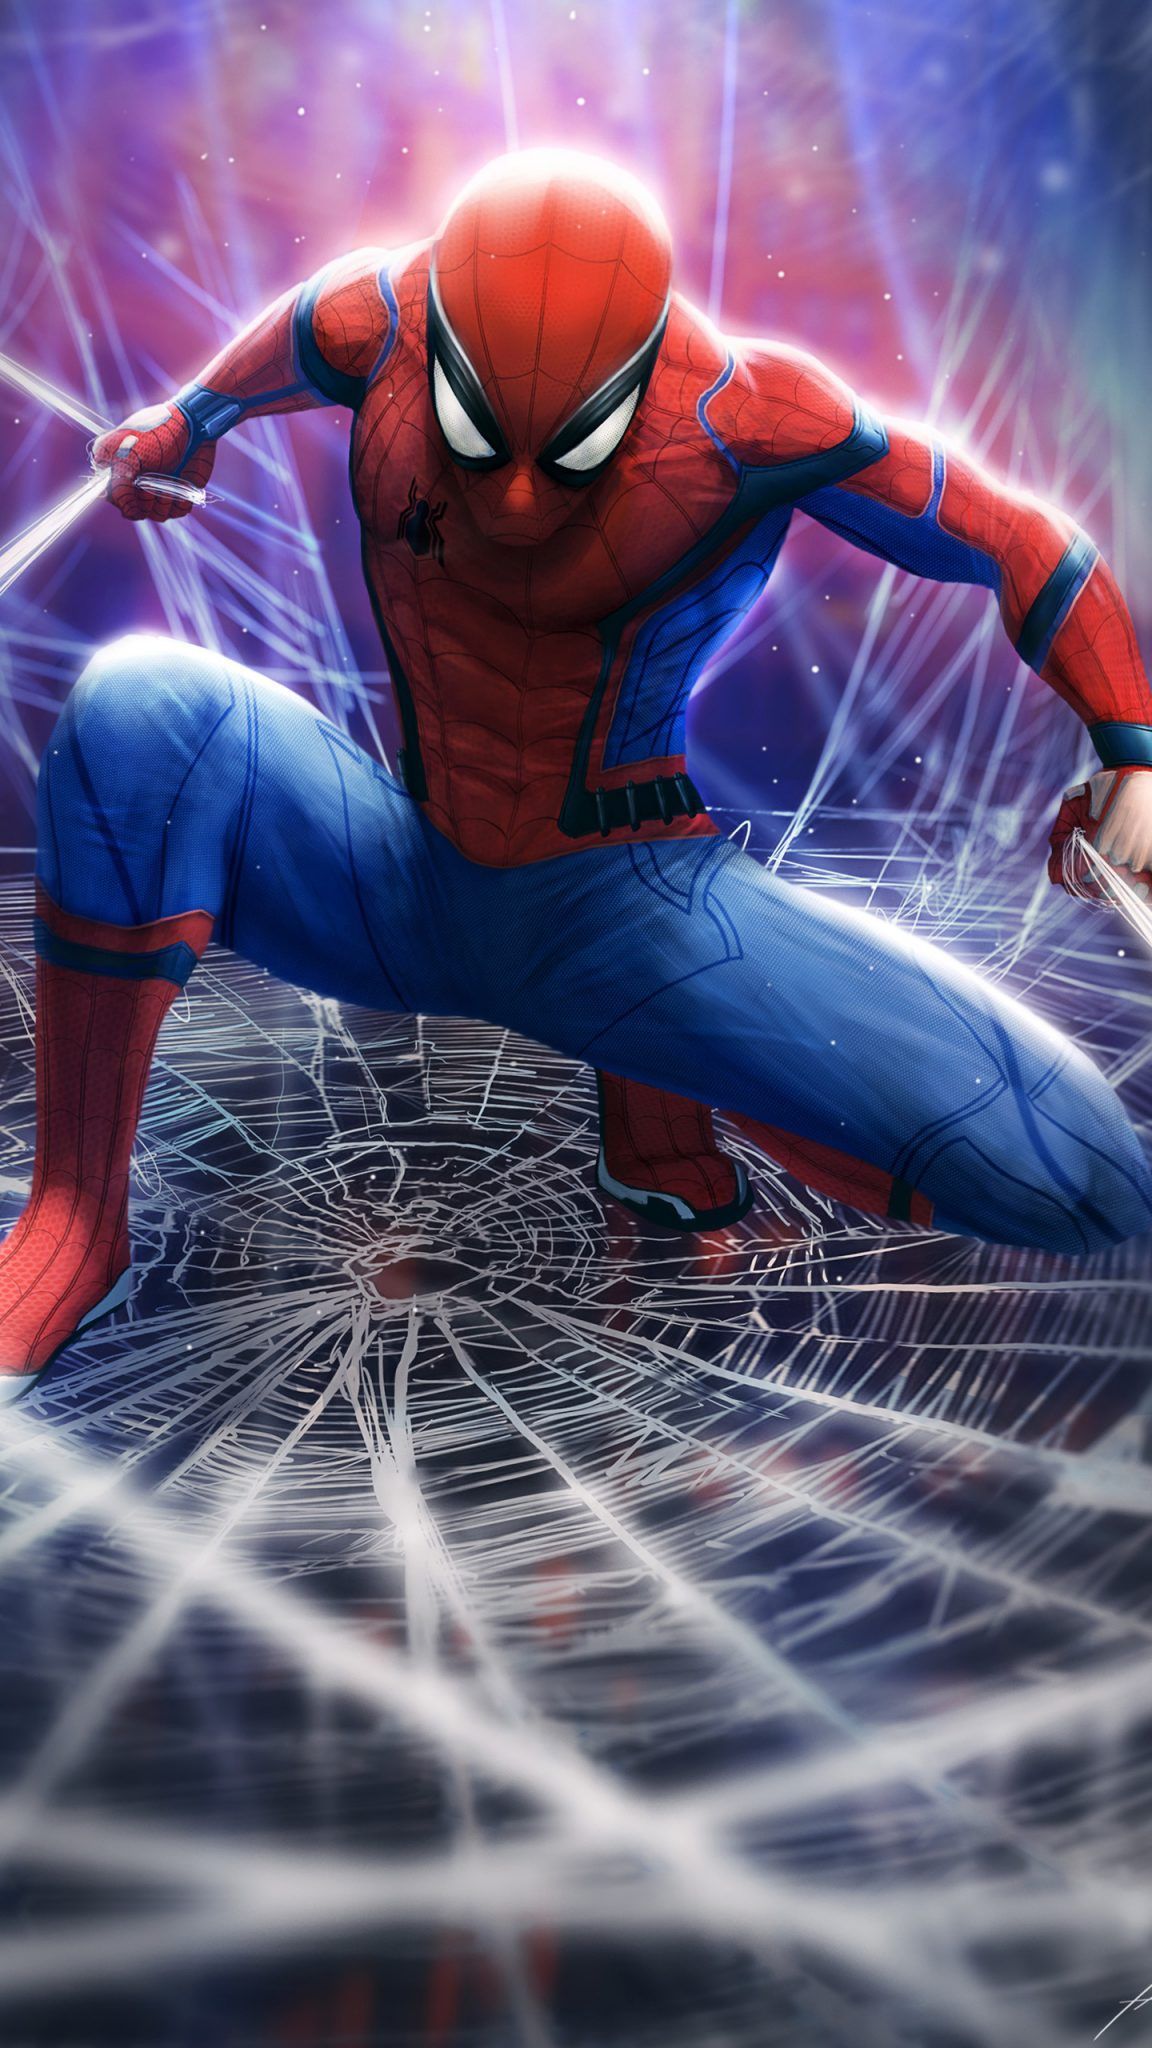 Los mejores fondos de pantalla de Spiderman: PS4, Homecoming, Into the Spider-Verse